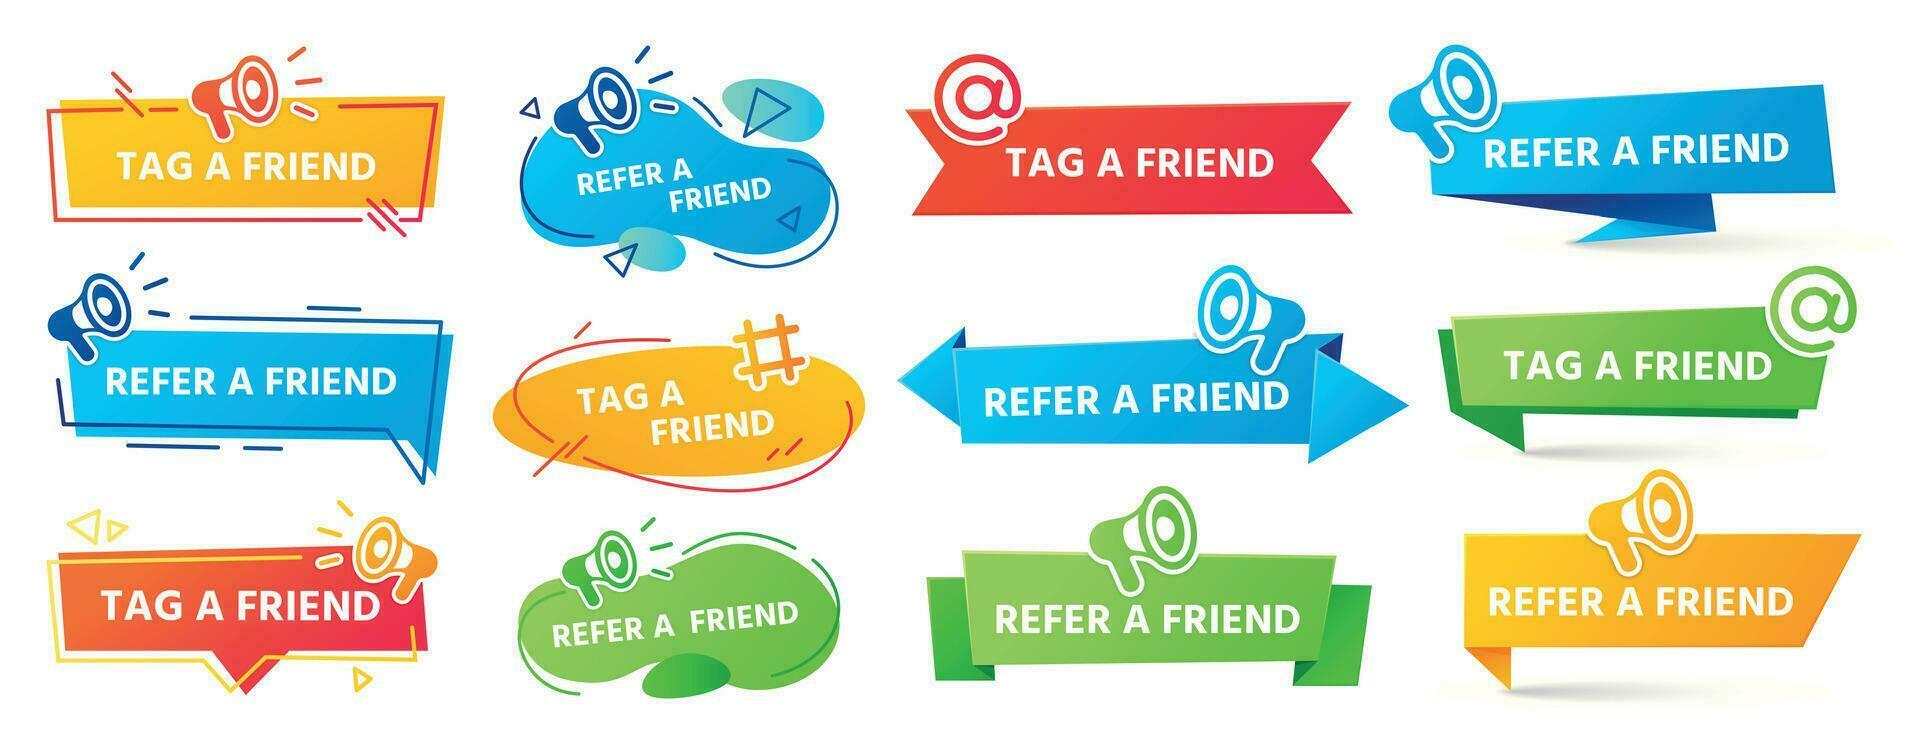 referir un amigo bandera. remisión programa etiqueta, amigos recomendación y social márketing etiqueta amigo pancartas vector conjunto